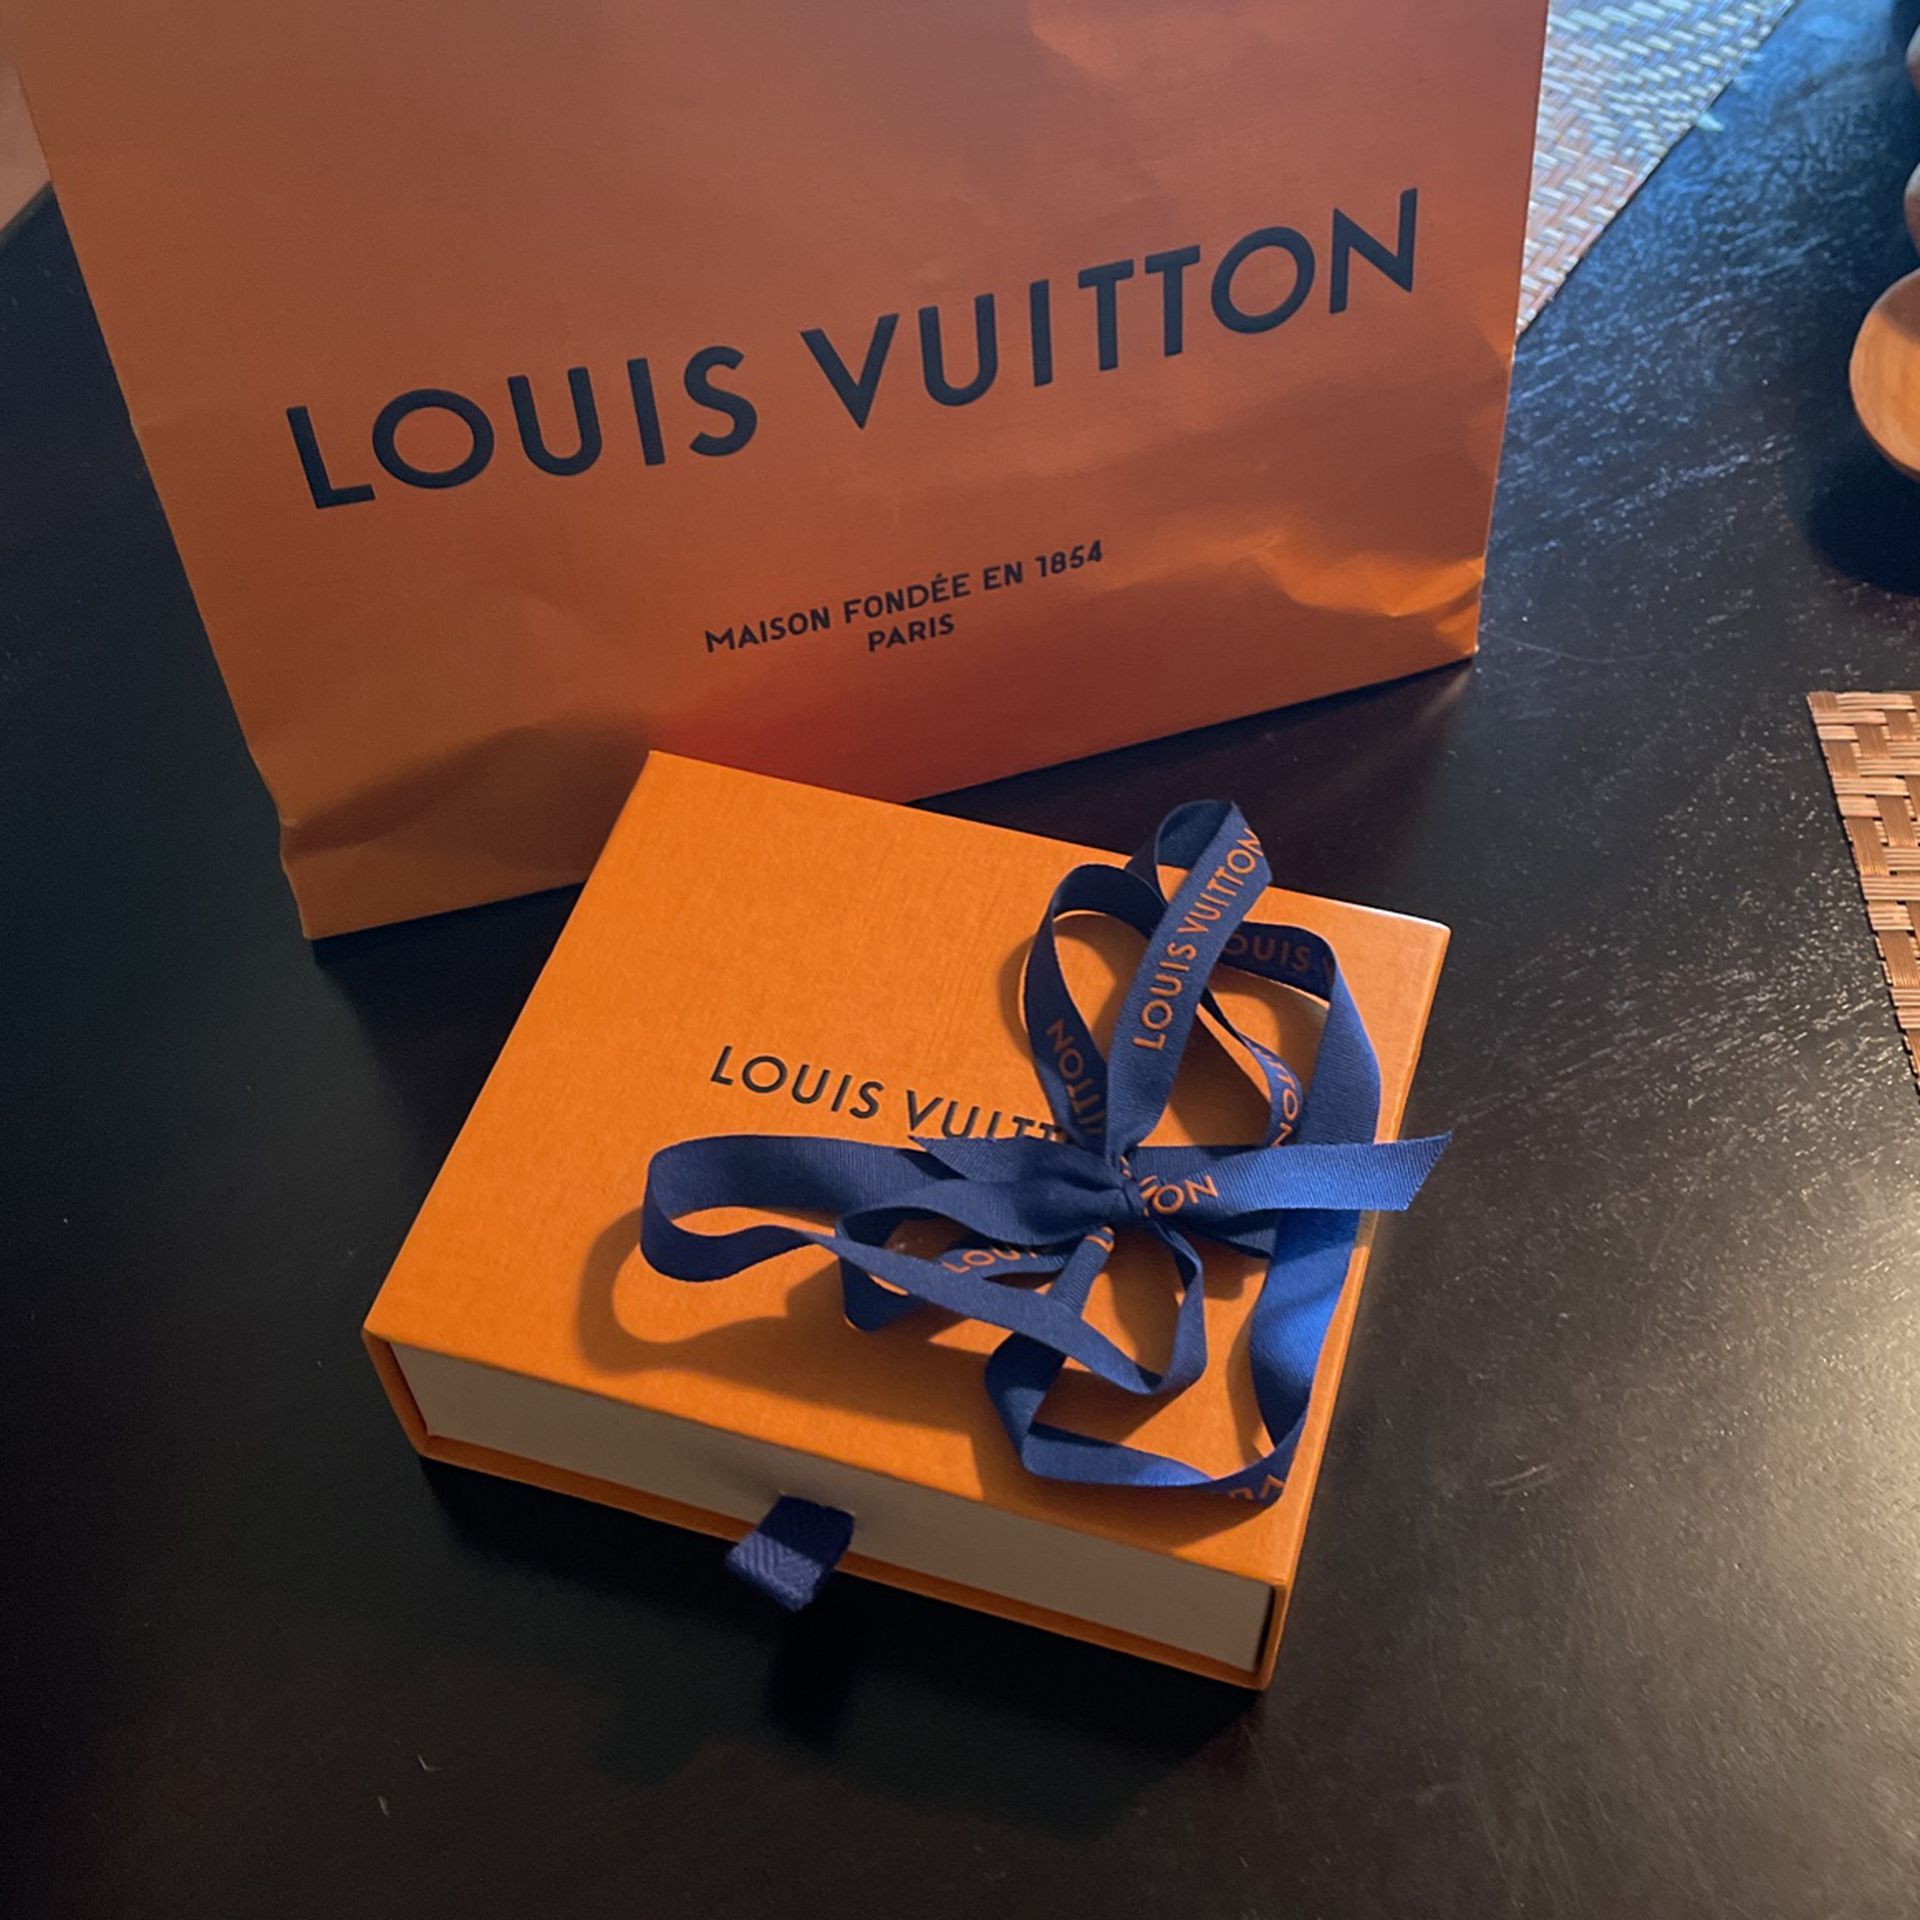 100% Authentic Louis Vuitton Wallet 